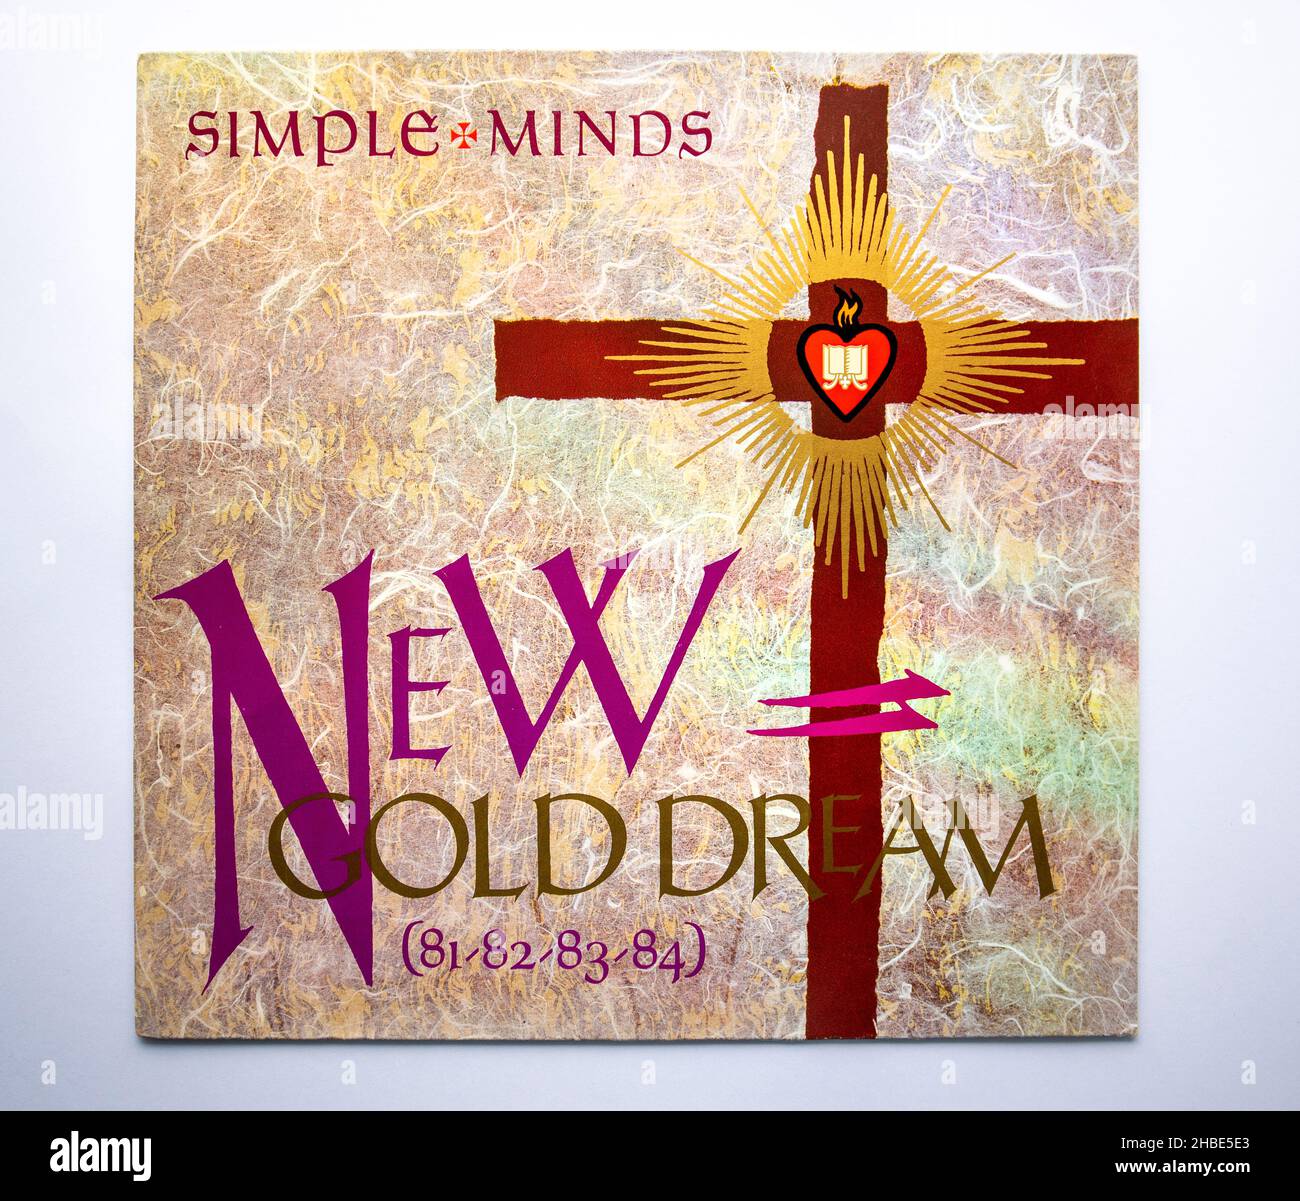 LP Cover of New Gold Dream (81-82-83-84), il quinto album in studio della band scozzese Simple Minds, pubblicato nel 1982 Foto Stock